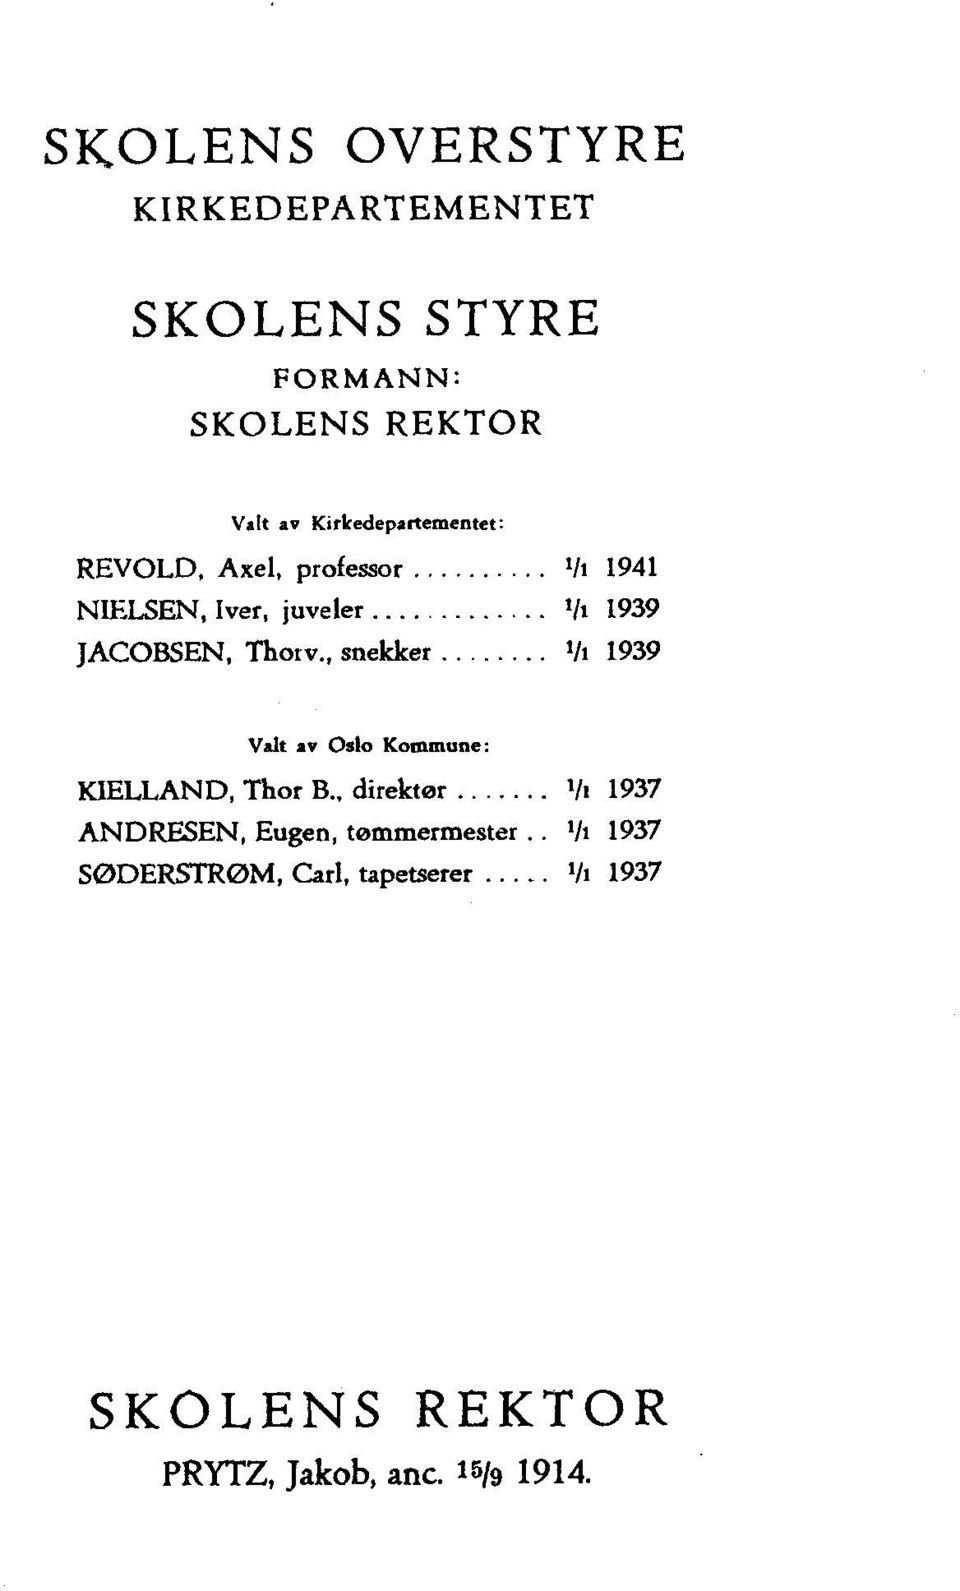 Thorv., snekker 1/1 1939 Valt av Oslo Kommune: KIELLAND, Thor B.